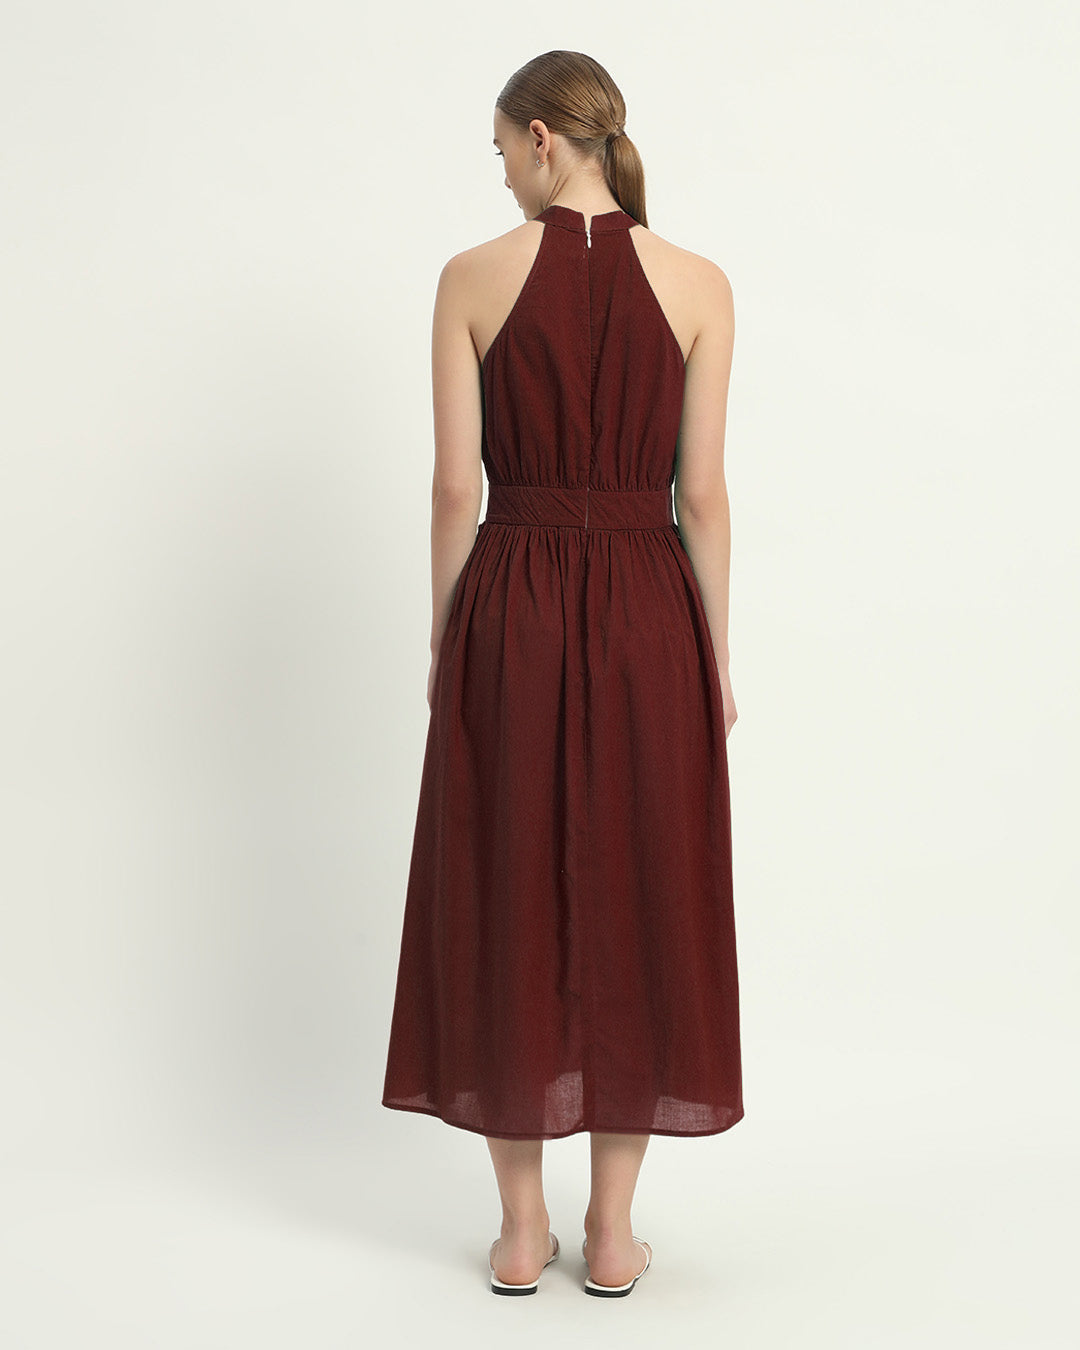 The Massena Rouge Cotton Dress